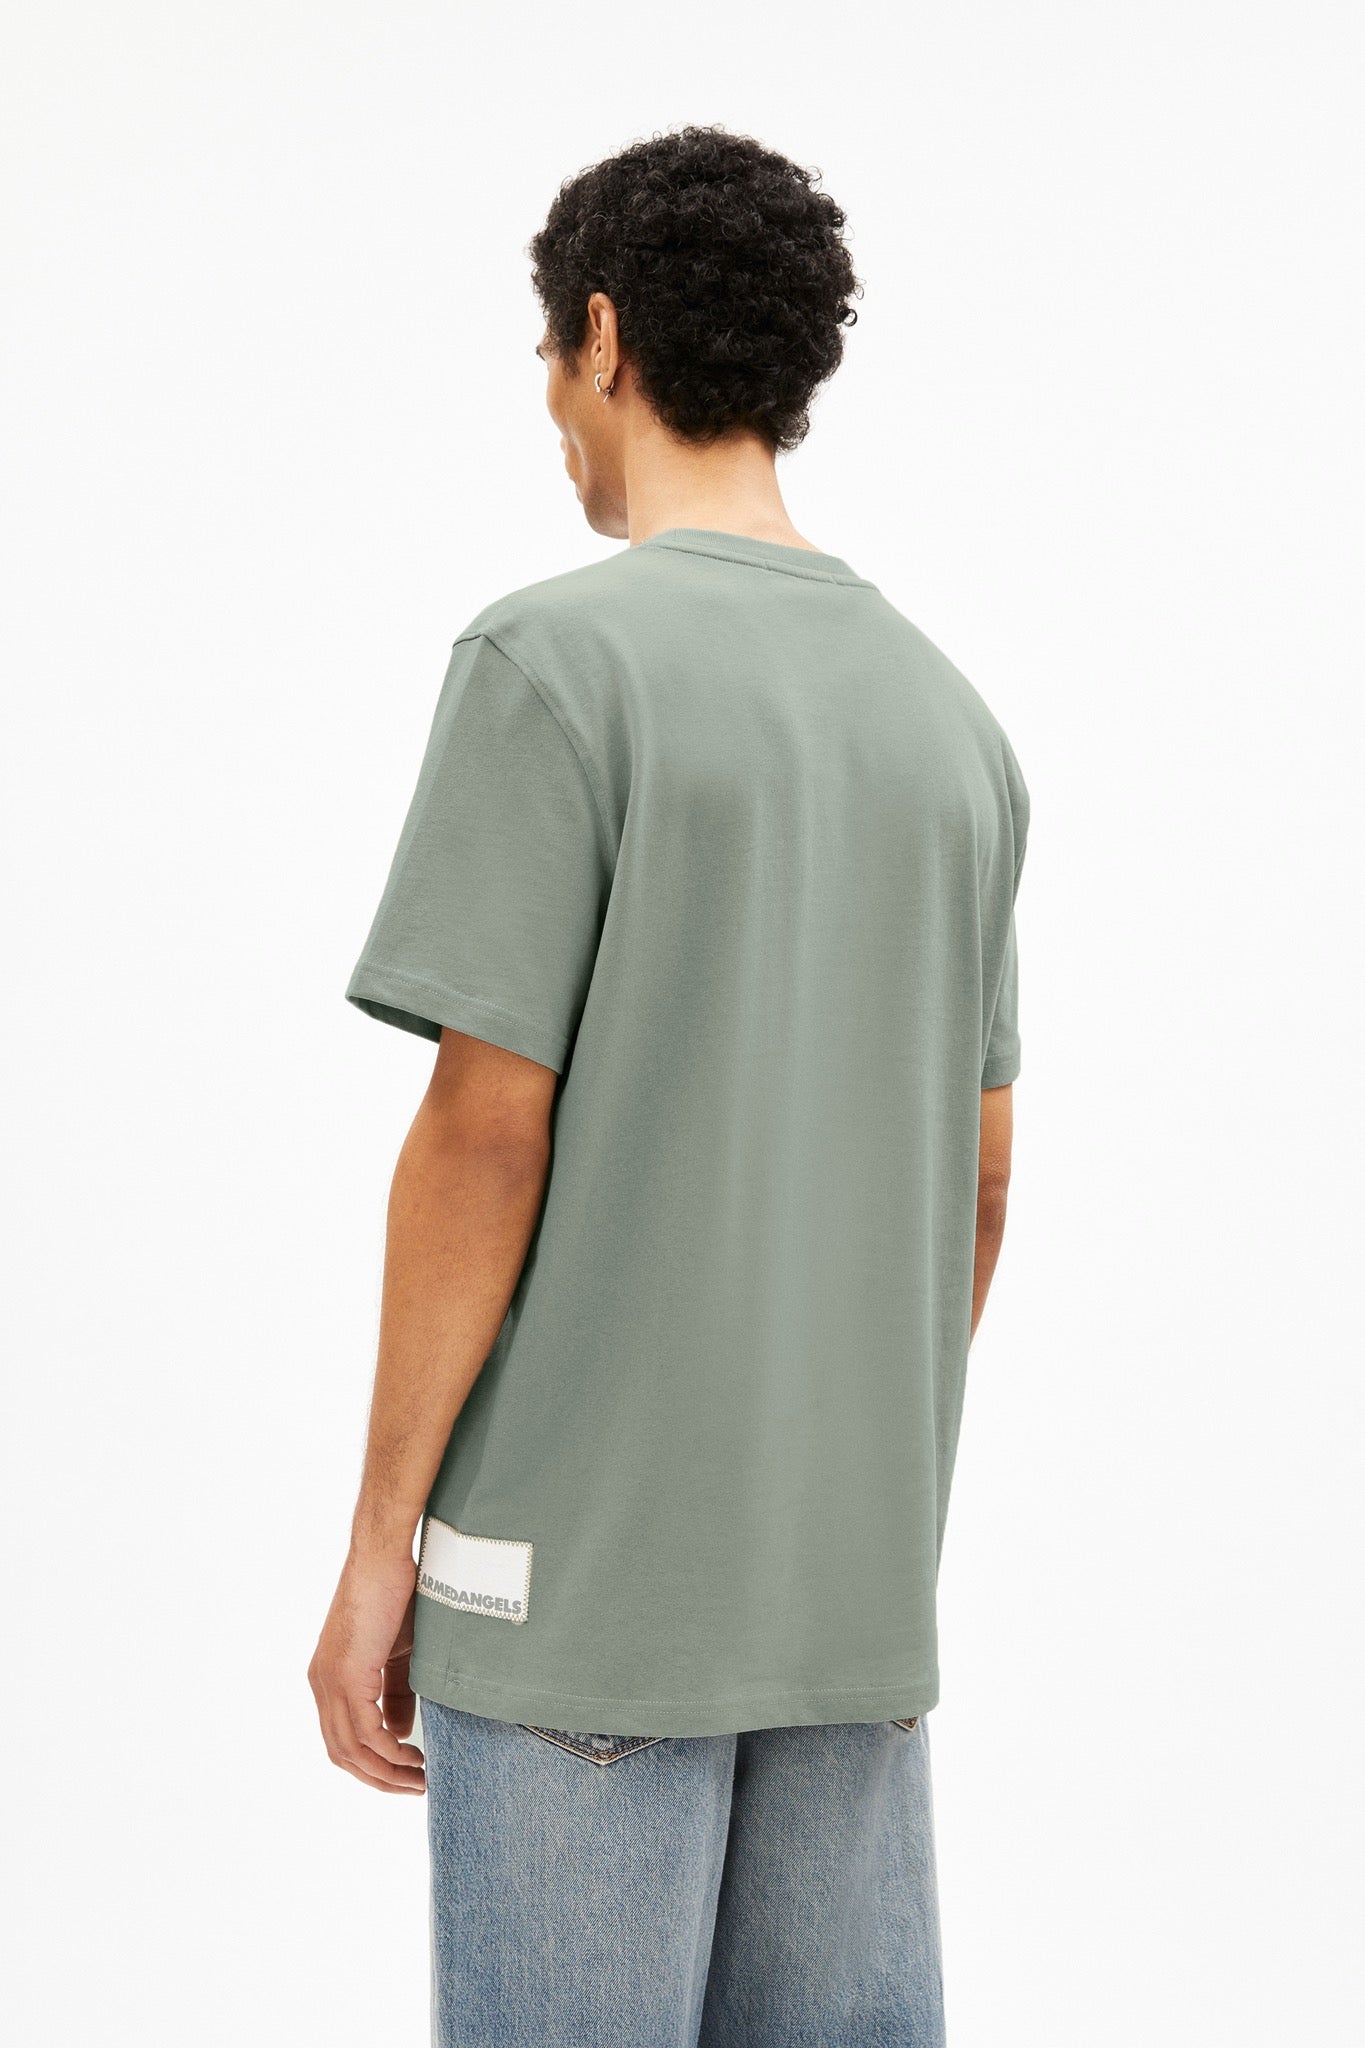 MAARKOS PATCH T-Shirt grey green